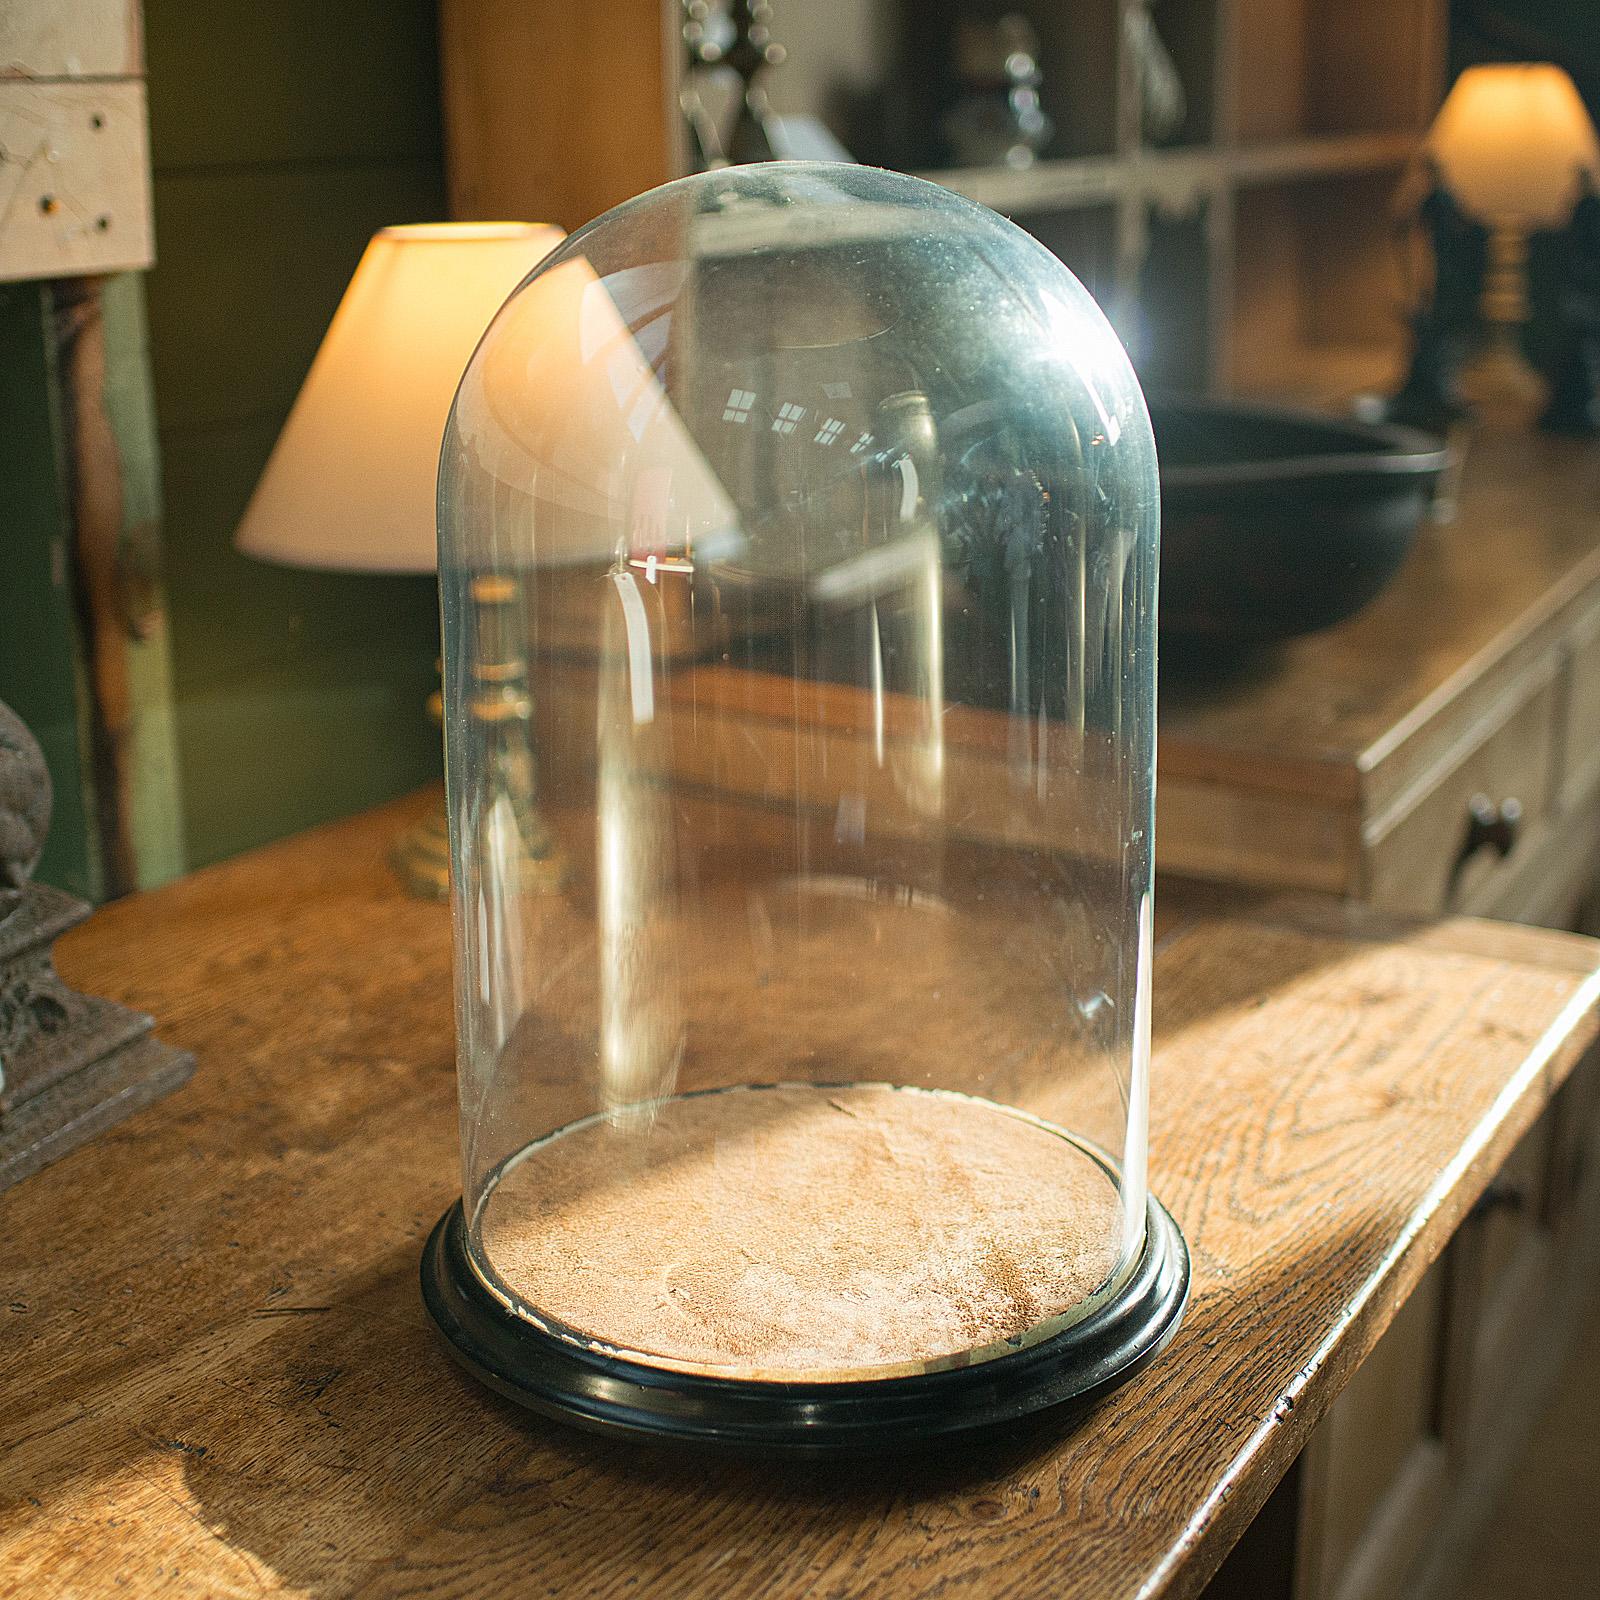 Il s'agit d'un dôme de présentation antique en miroir. Vitrine d'exposition ou de taxidermie anglaise en verre et bois doré, datant de la fin de la période victorienne, vers 1880.

De larges proportions, avec un intérieur en miroir saisissant - un